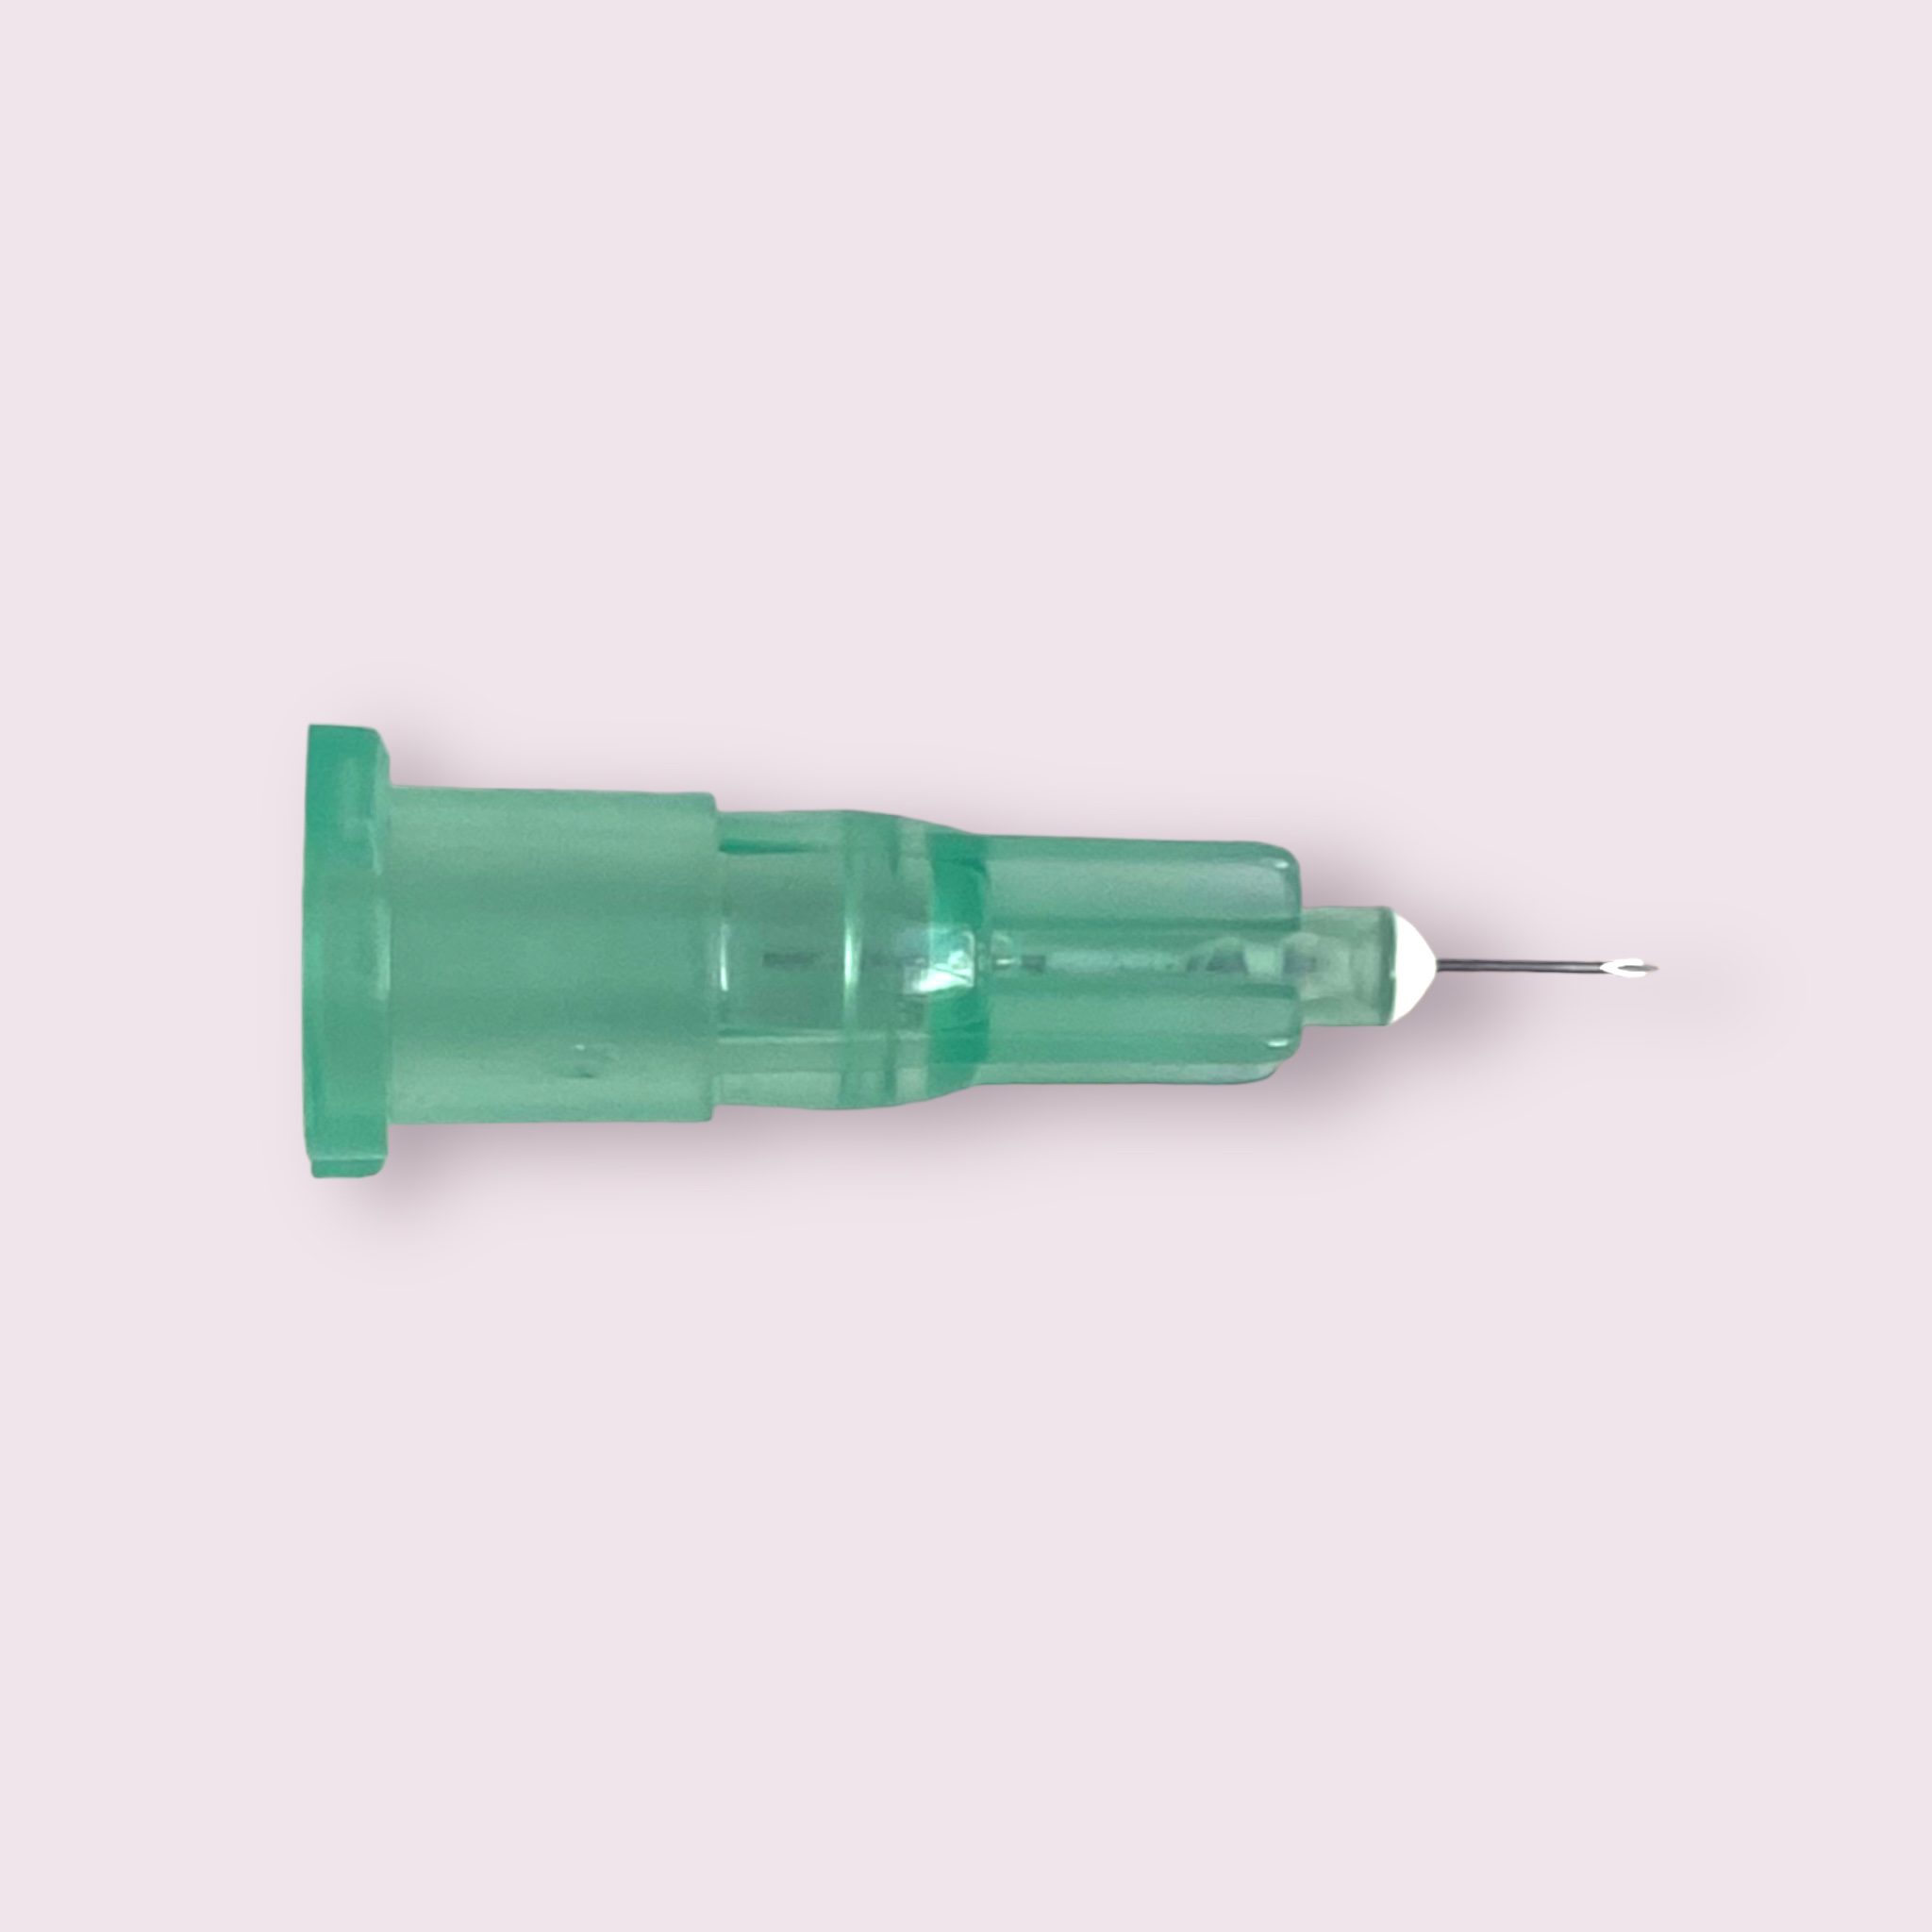 Aesthetic Needle 32G x 13mm 32G x 1/2 100/Box # 32G59875 - Merit  Pharmaceutical